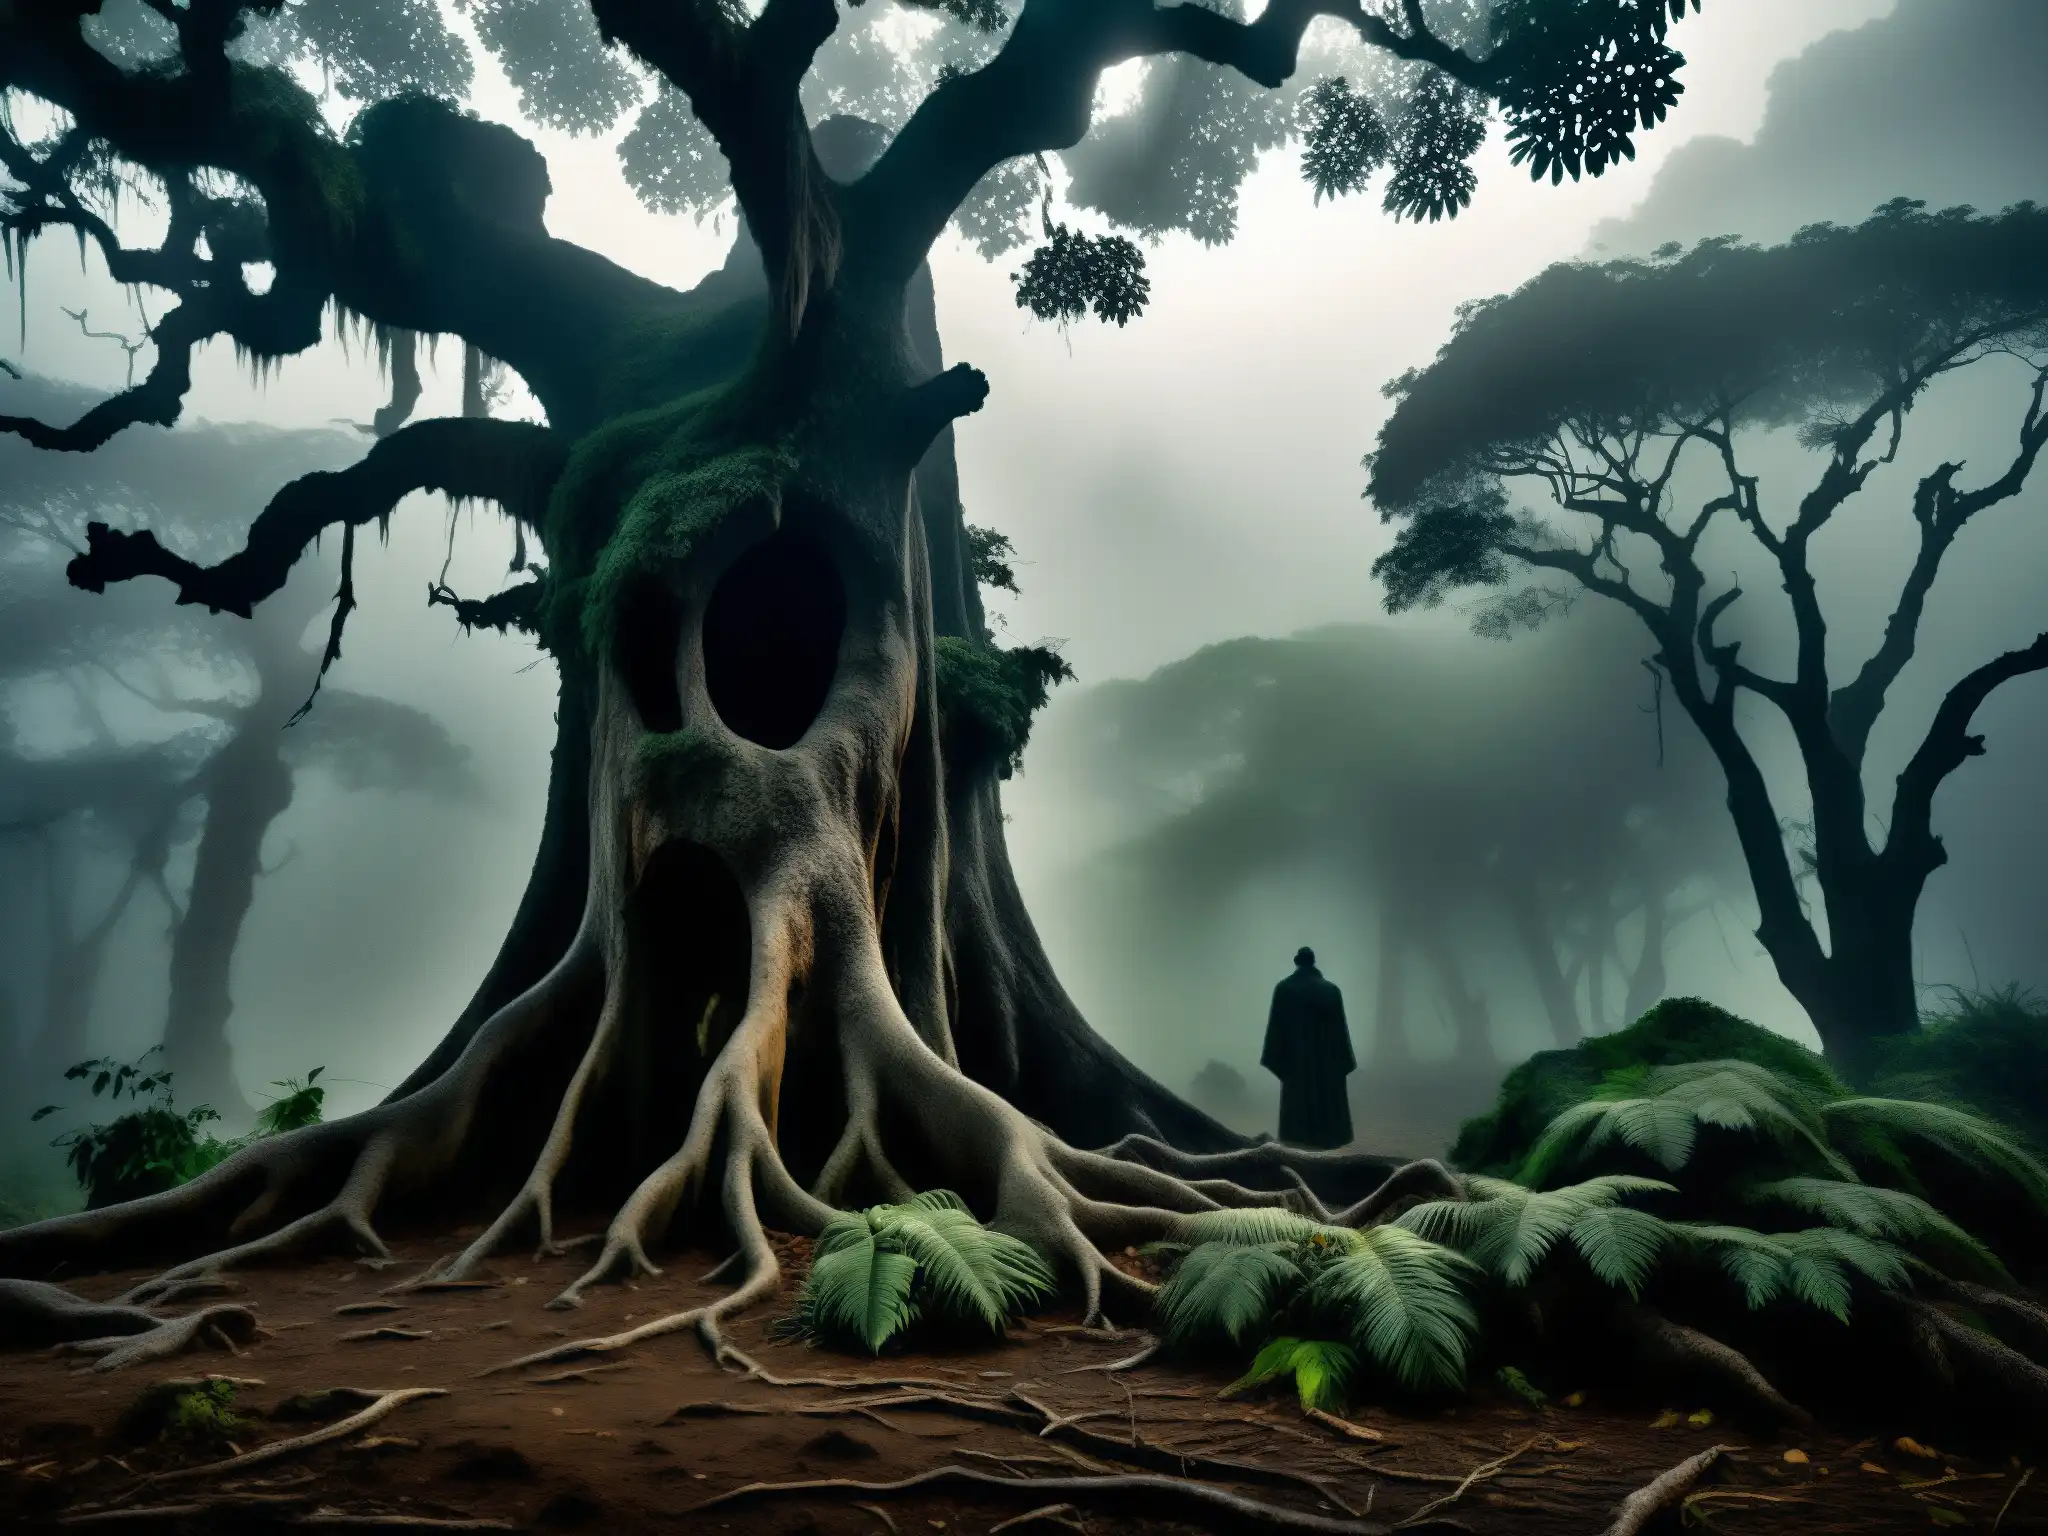 La Sayona mitología venezolana: Imagen misteriosa de un bosque neblinoso y sombrío en Venezuela, con una figura fantasmal entre los árboles